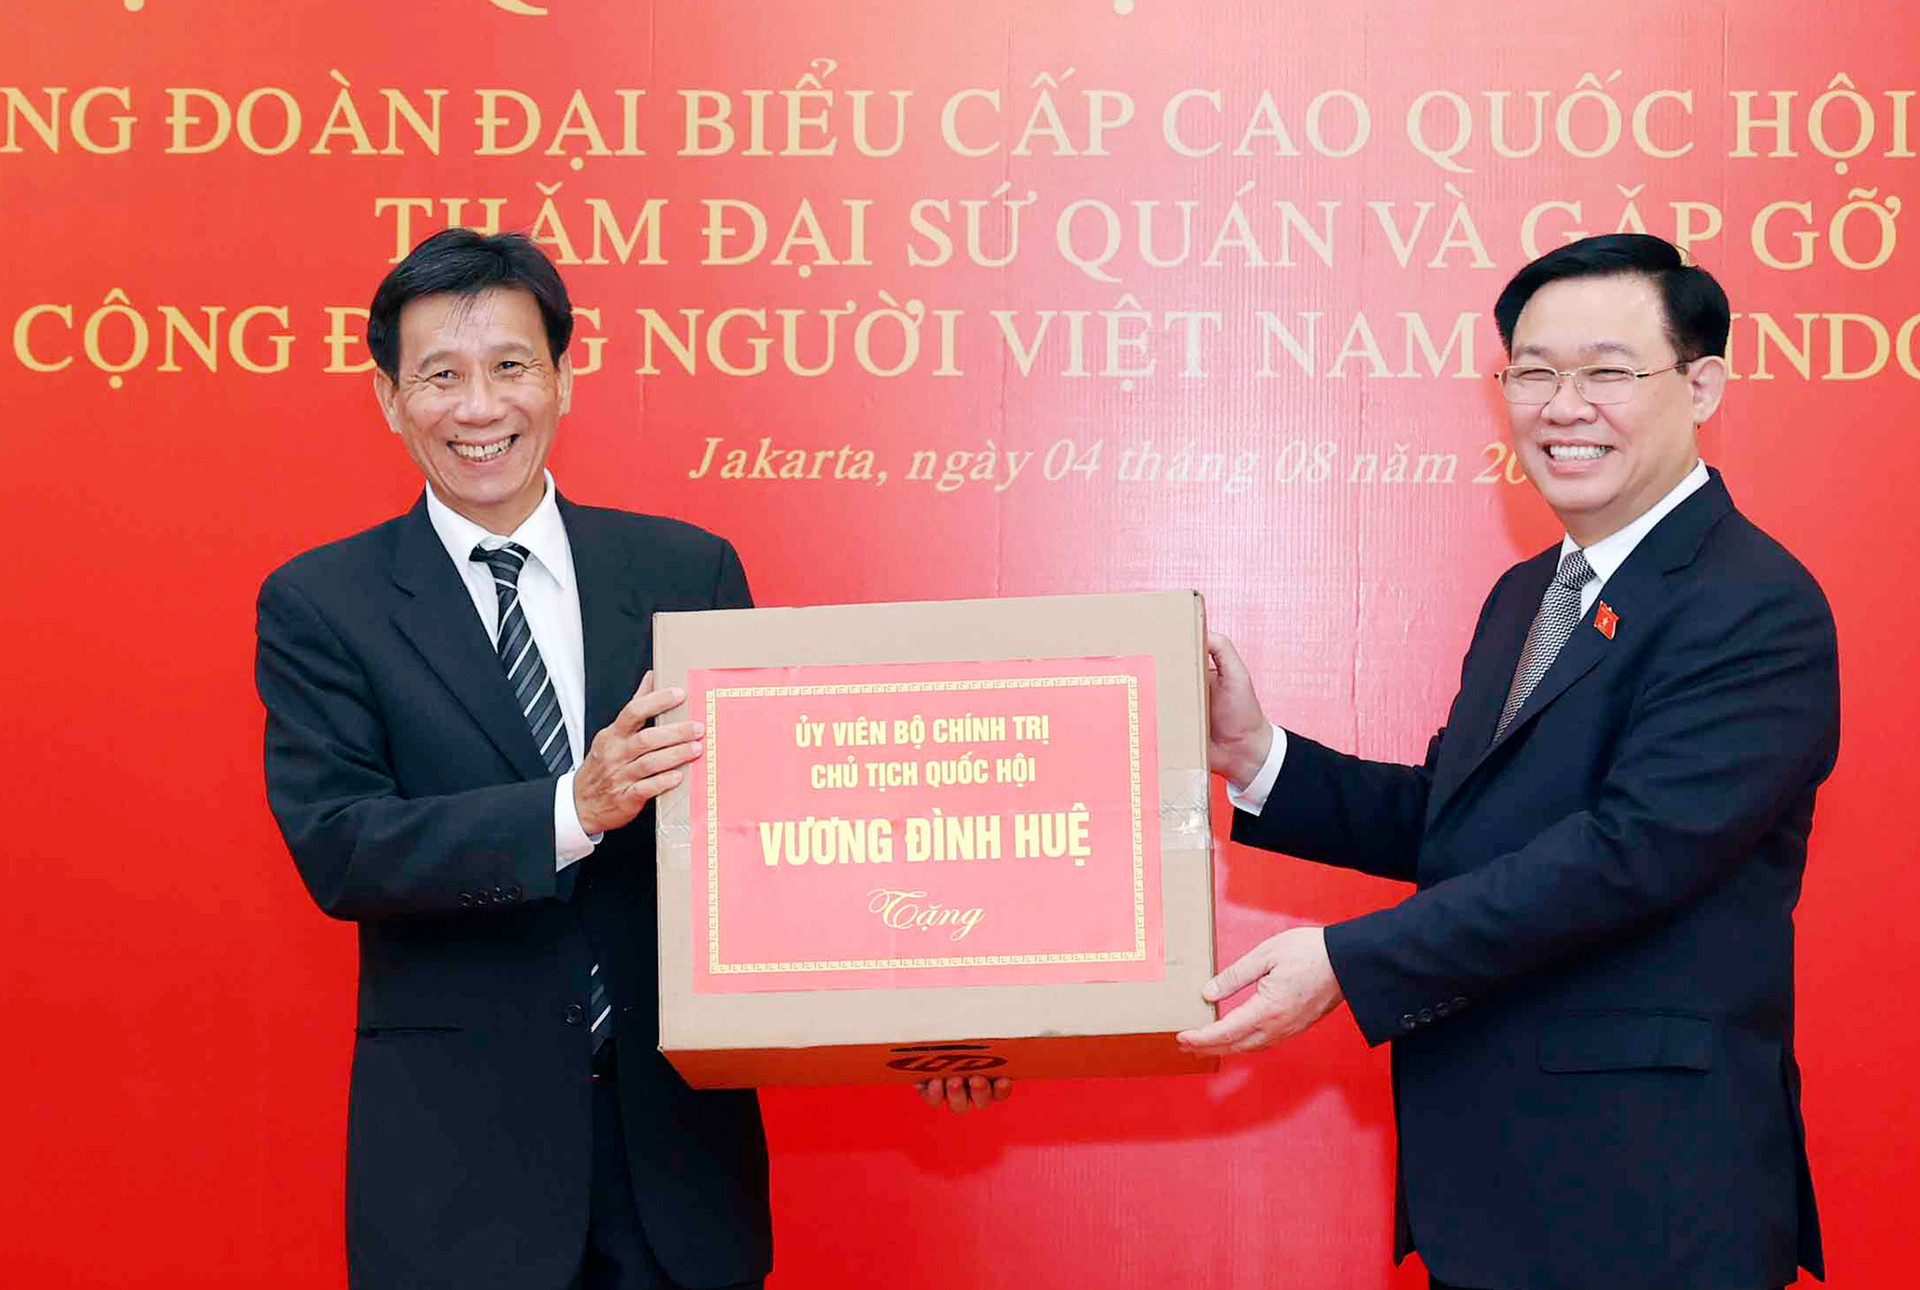 Chủ tịch Quốc hội Vương Đình Huệ: Phát huy vai trò cầu nối, đóng góp thiết thực cho quan hệ Việt Nam - Indonesia -5